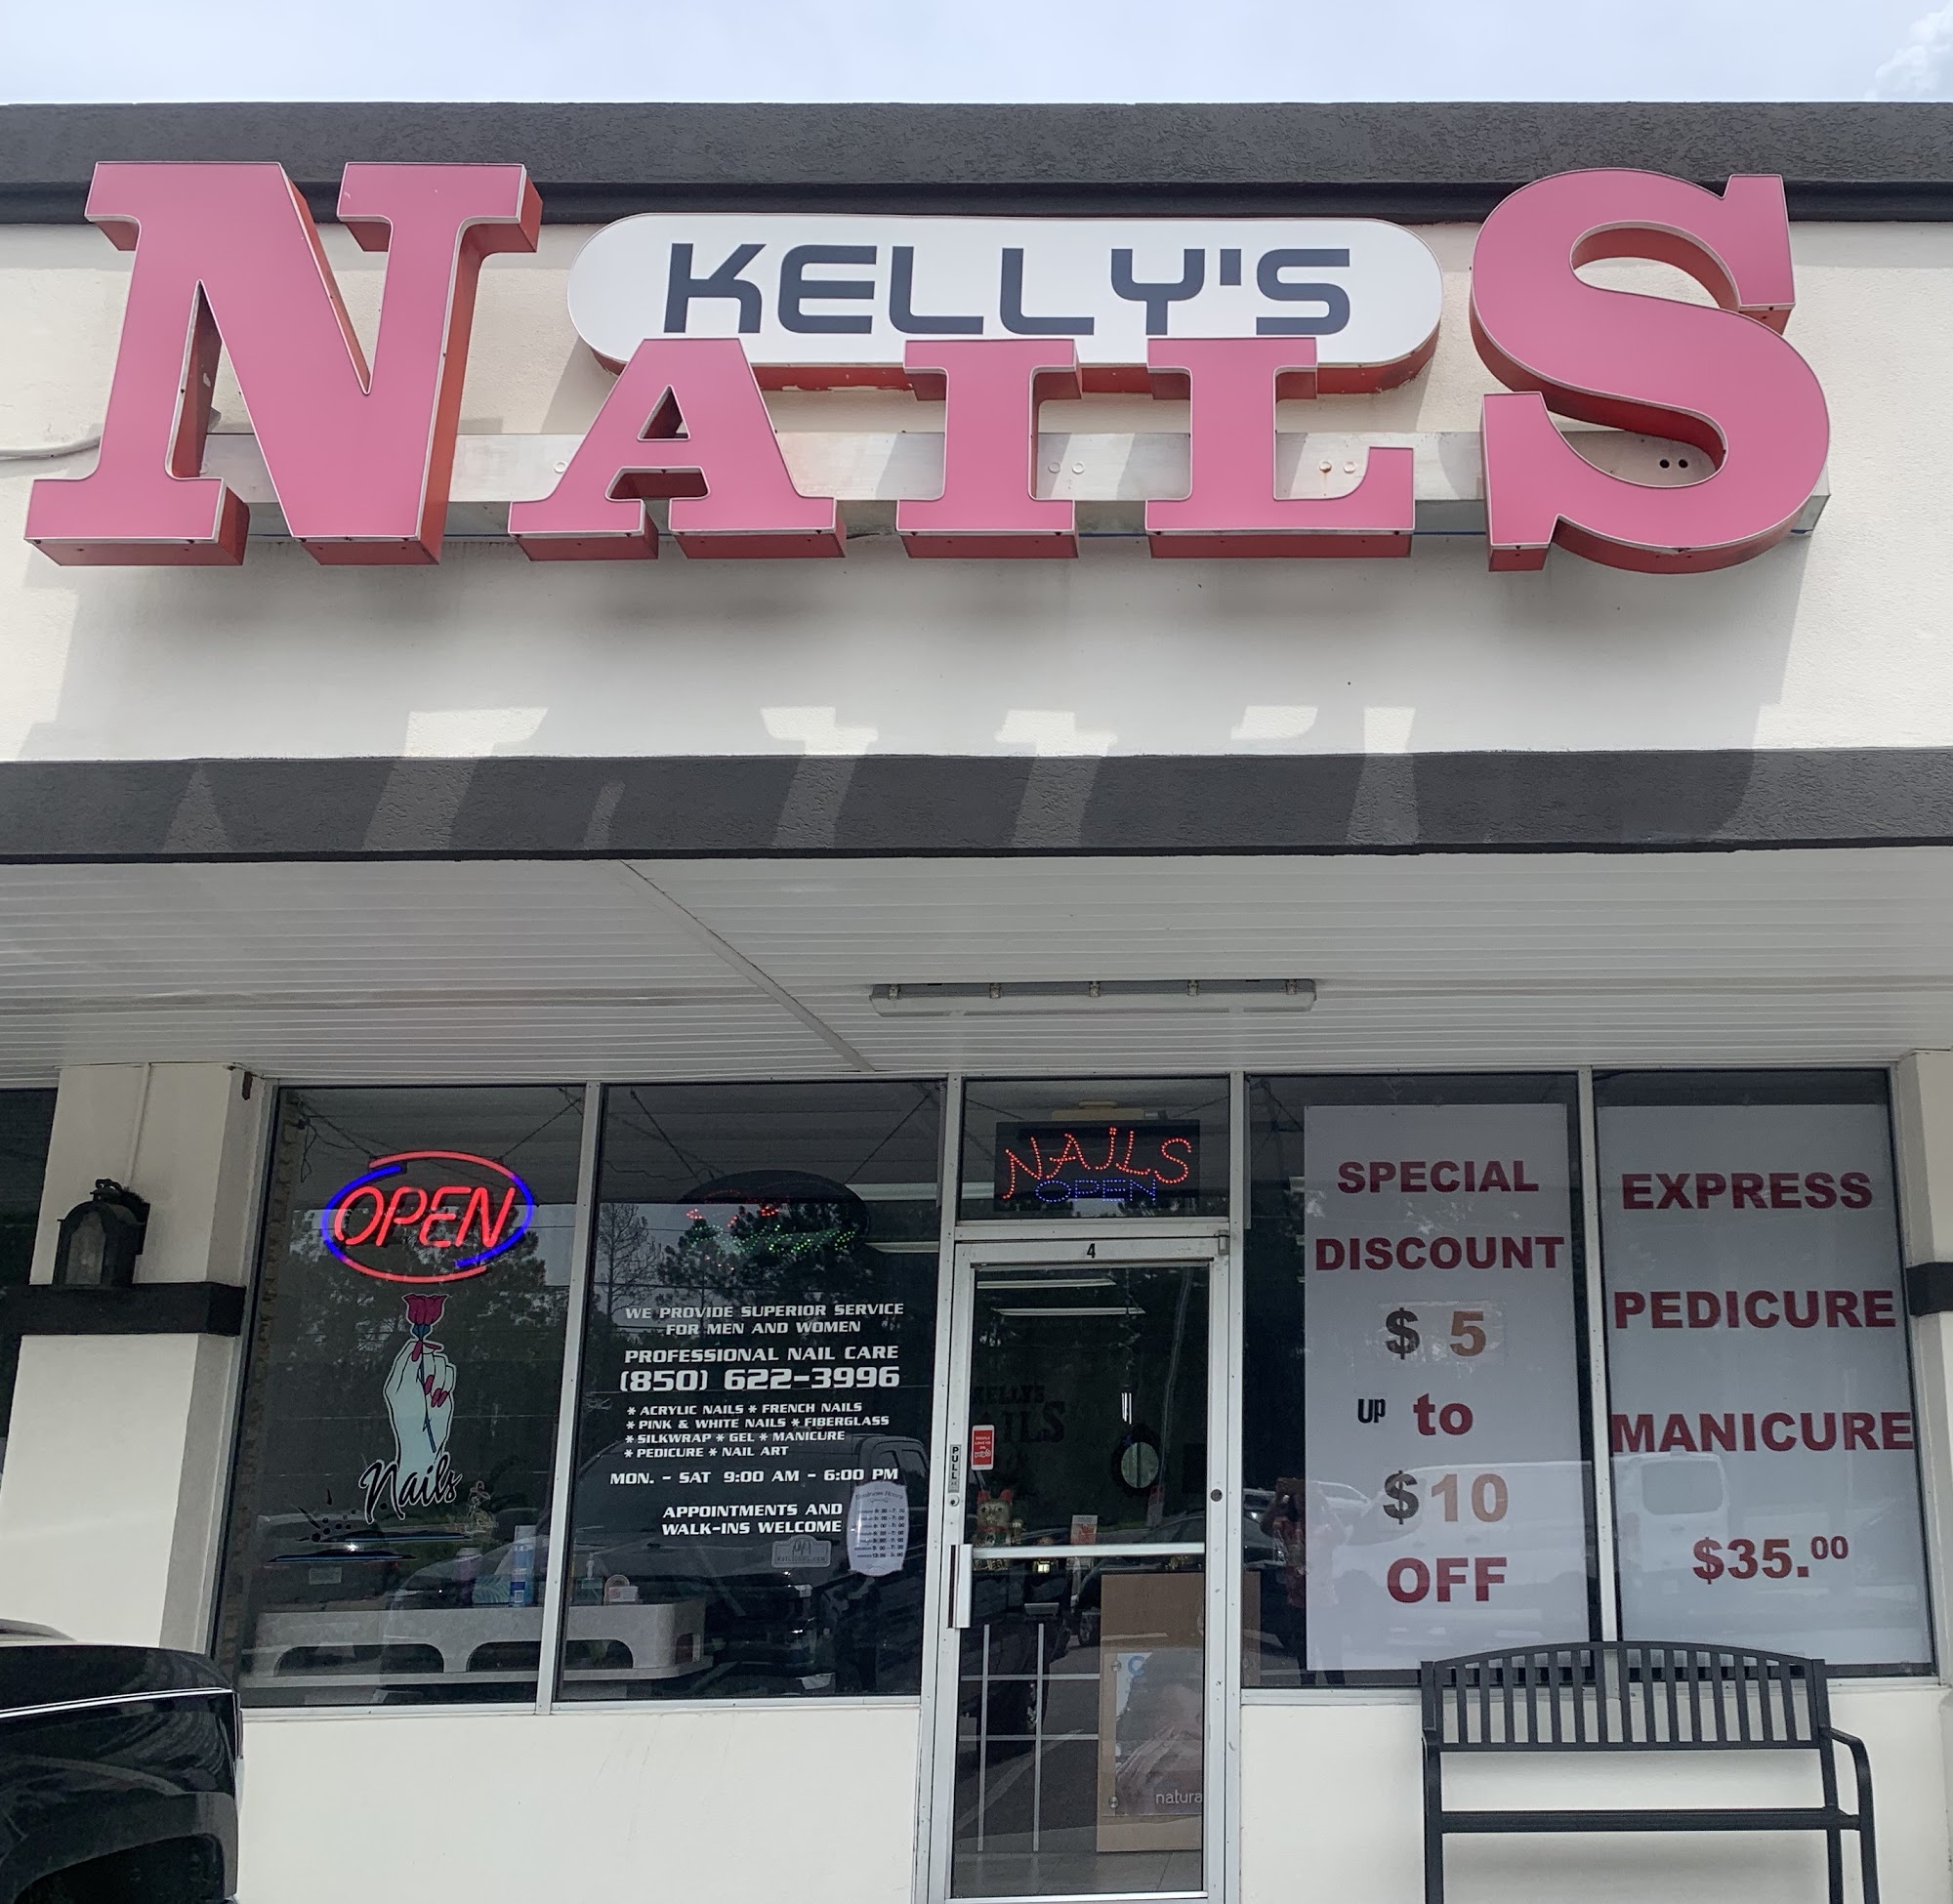 Kelly's Nails